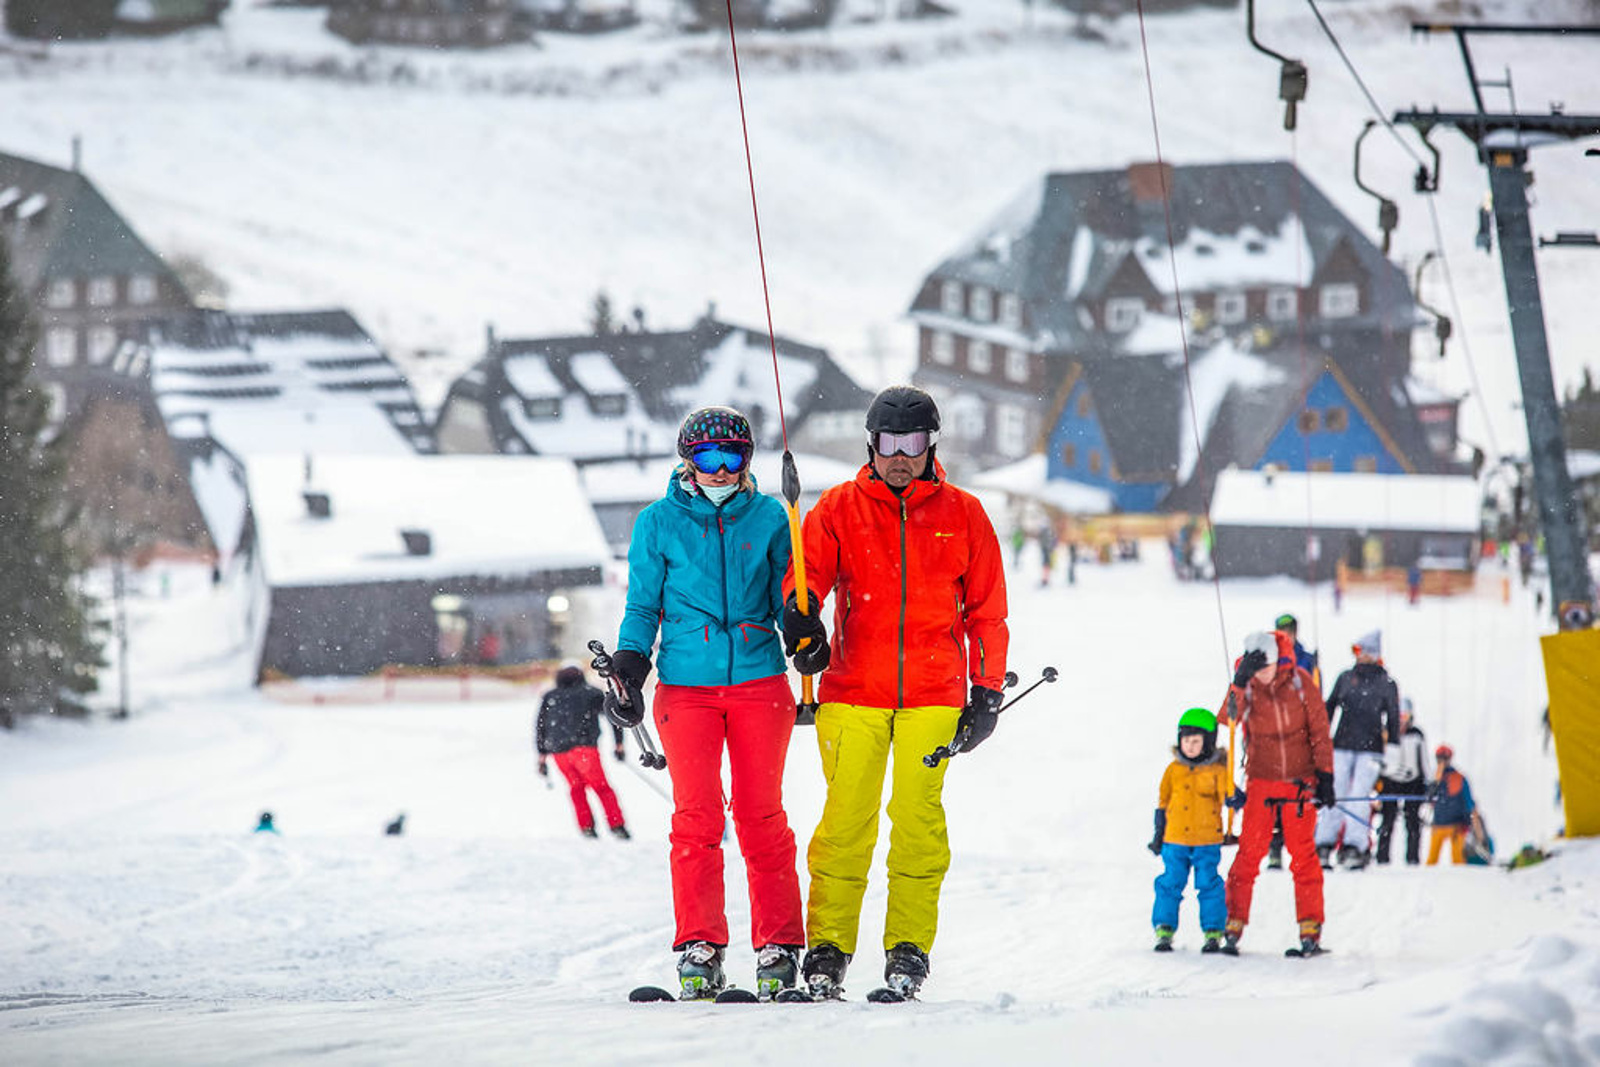 V pátek na lyže. V Krkonoších se bude lyžovat i v Malé Úpě a Mladých Bukách  - Krkonošský deník